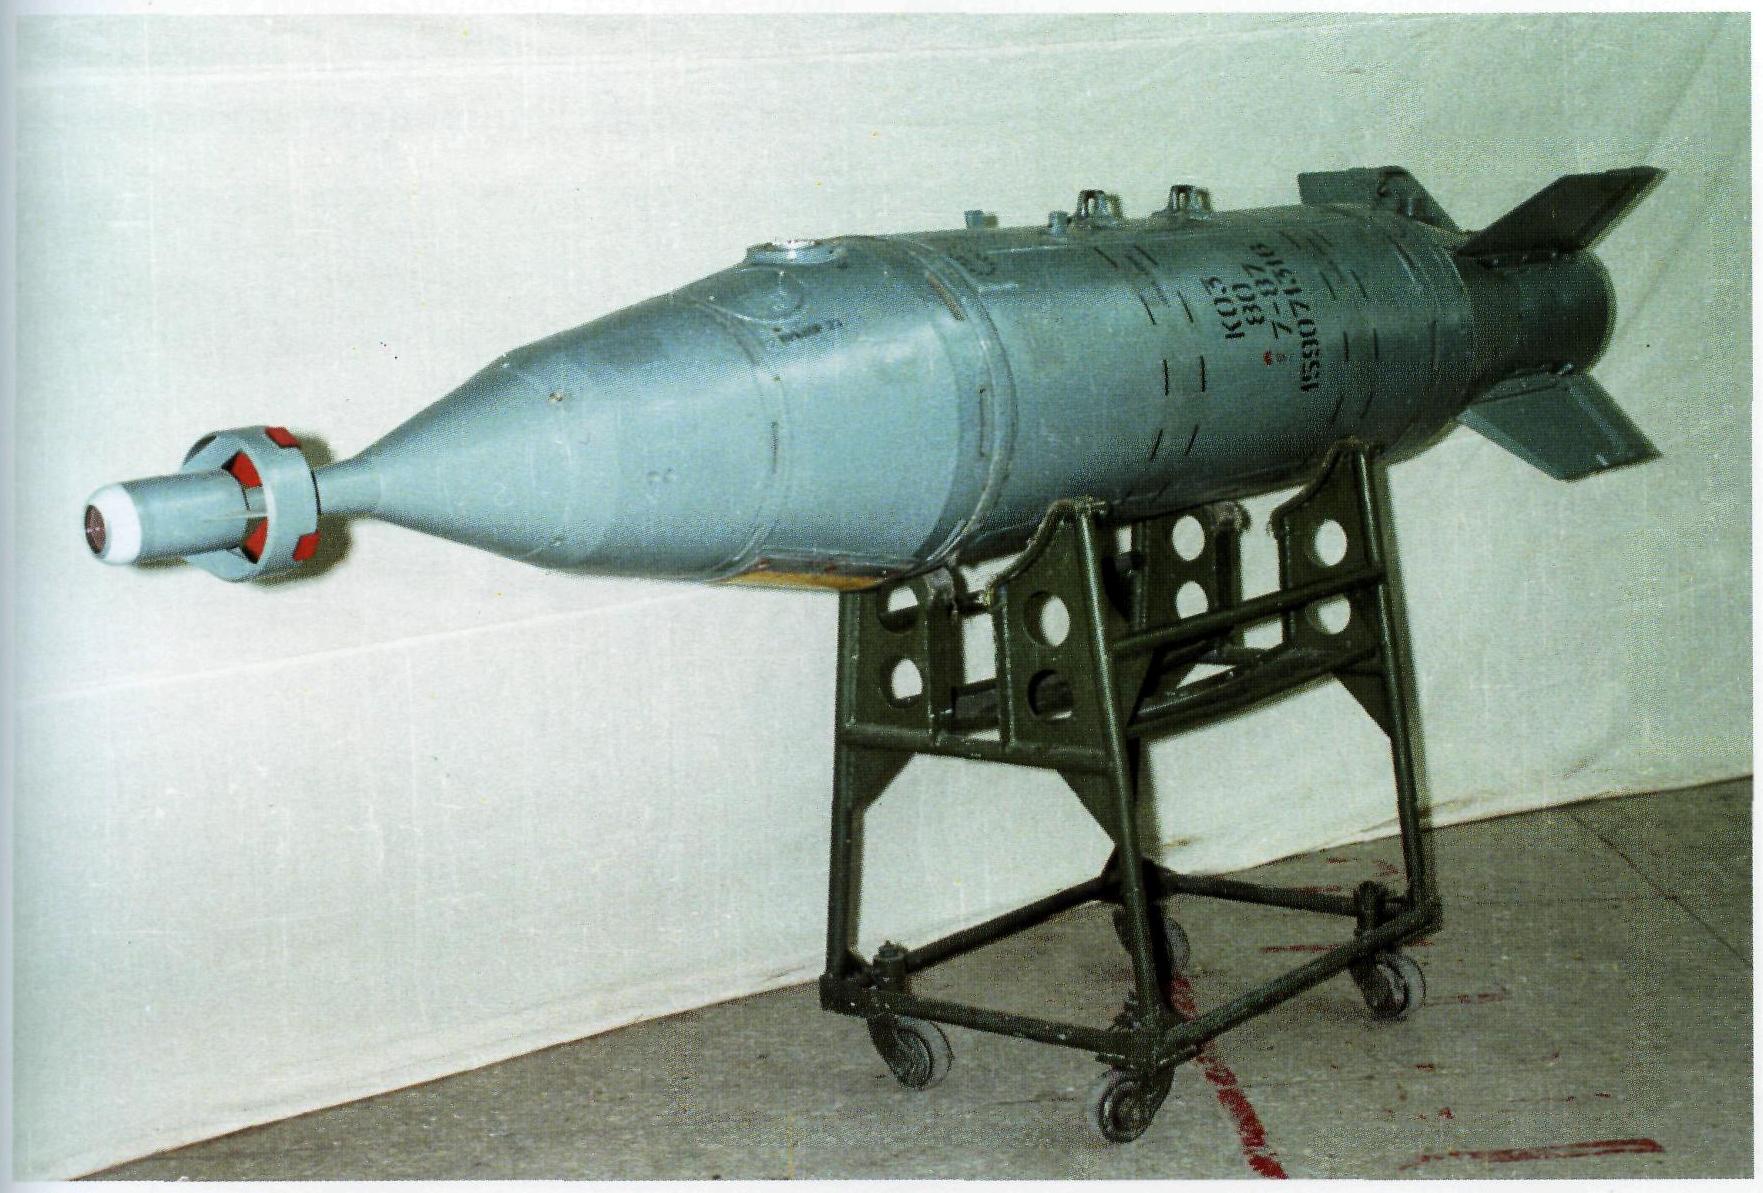 Авиабомба каб. Корректируемая авиабомба каб-500. Управляемая Авиационная бомба каб-500. Корректируемая Авиационная бомба каб-500л. Авиабомба каб 500 л.